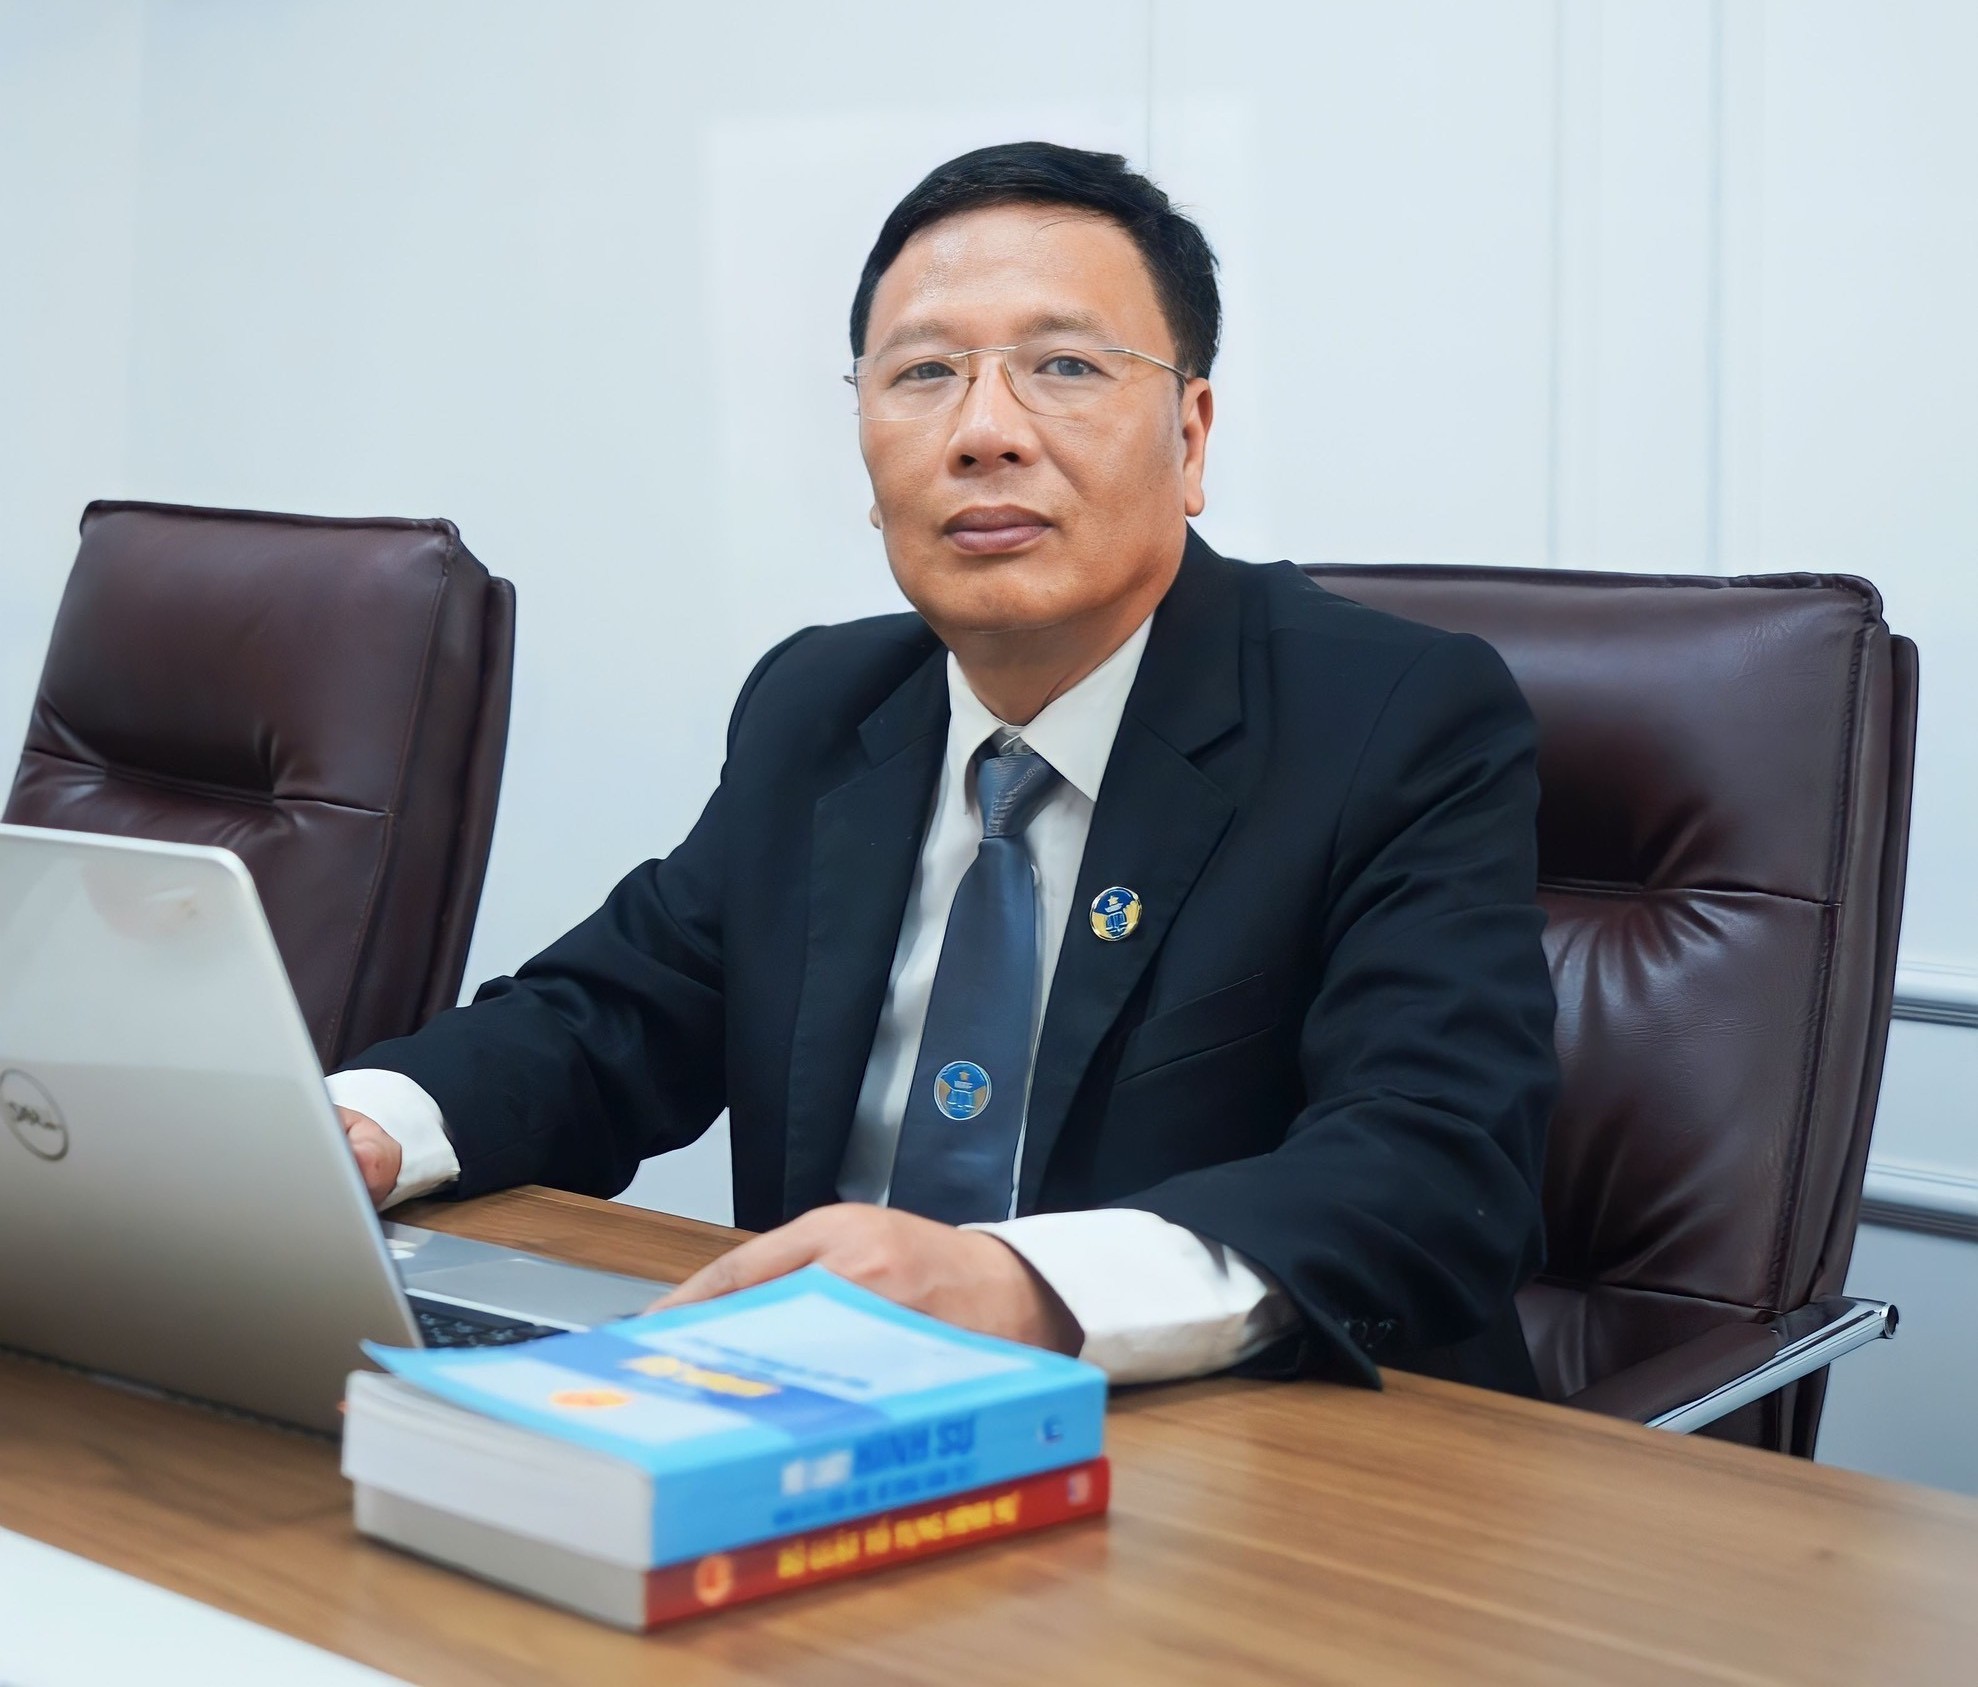 
Luật sư Bùi Xuân Lai (Hệ thống dịch vụ pháp lý toàn quốc Luật sư X)
